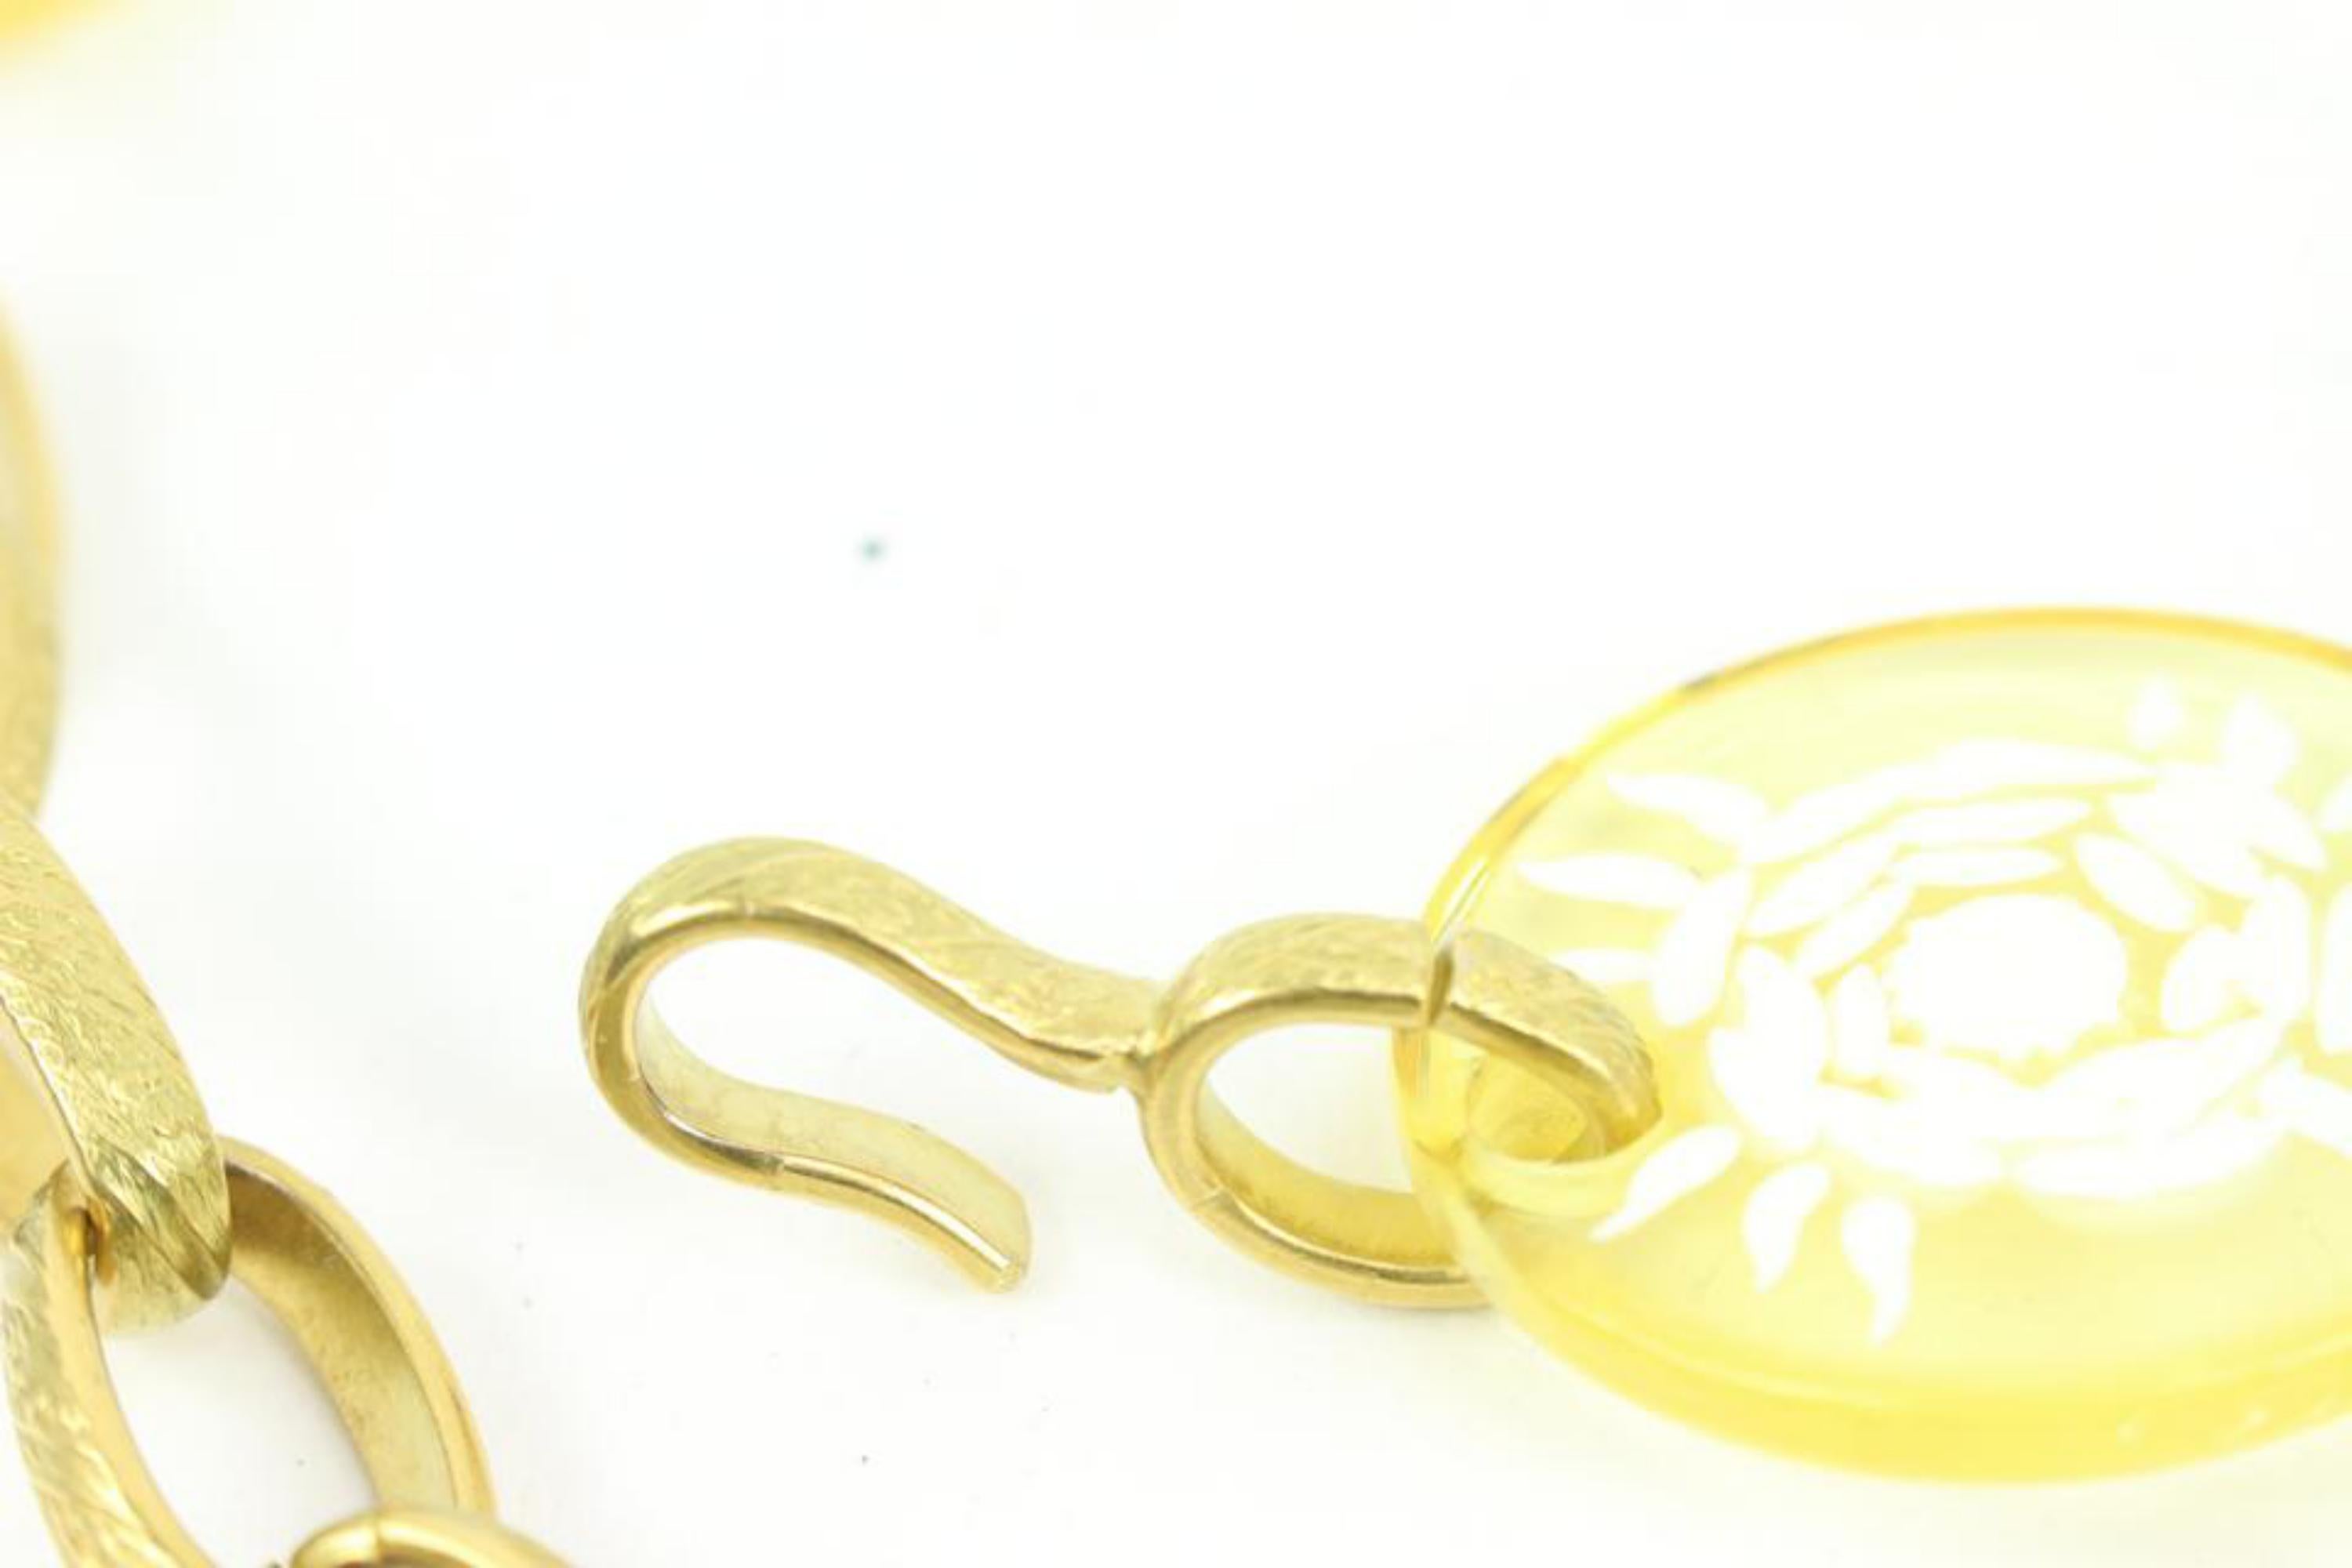 Chanel 95C klar x Gold CC Kette Gürtel Halskette 2way 89cz425s
Datum Code/Seriennummer: 95 C
Hergestellt in: Frankreich
Maße: Länge:  37